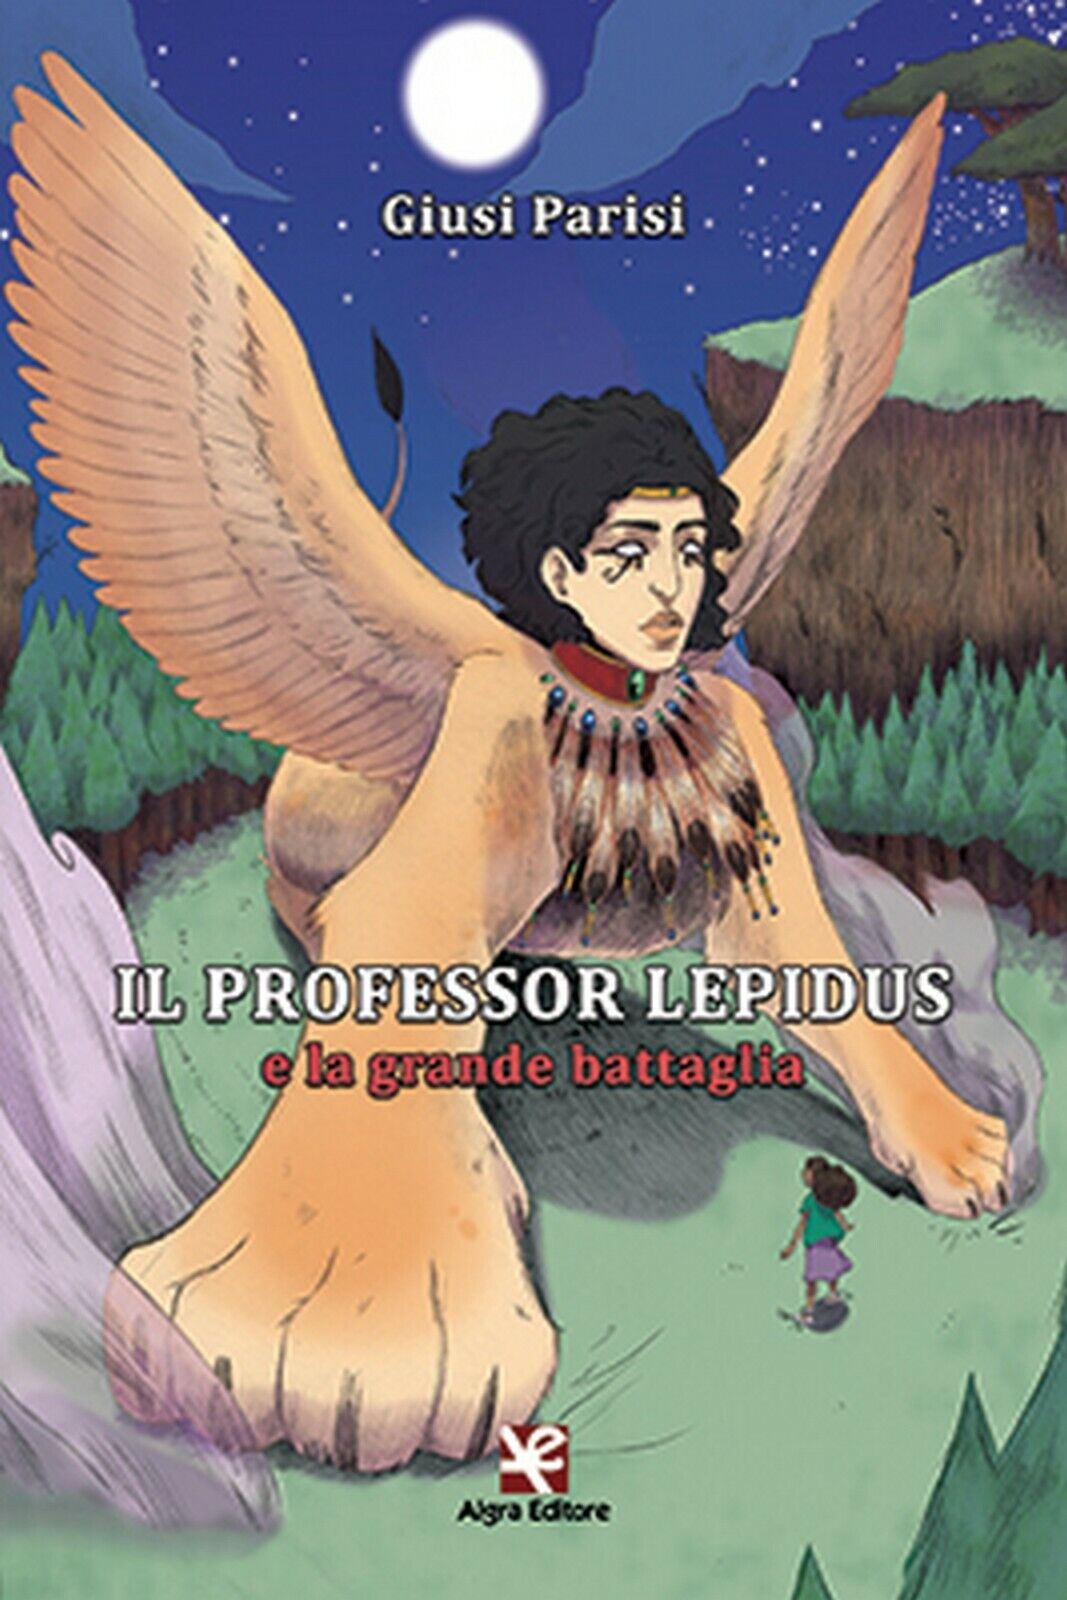 Il Professor Lepidus e la grande battaglia  di Giusi Parisi,  Algra Editore